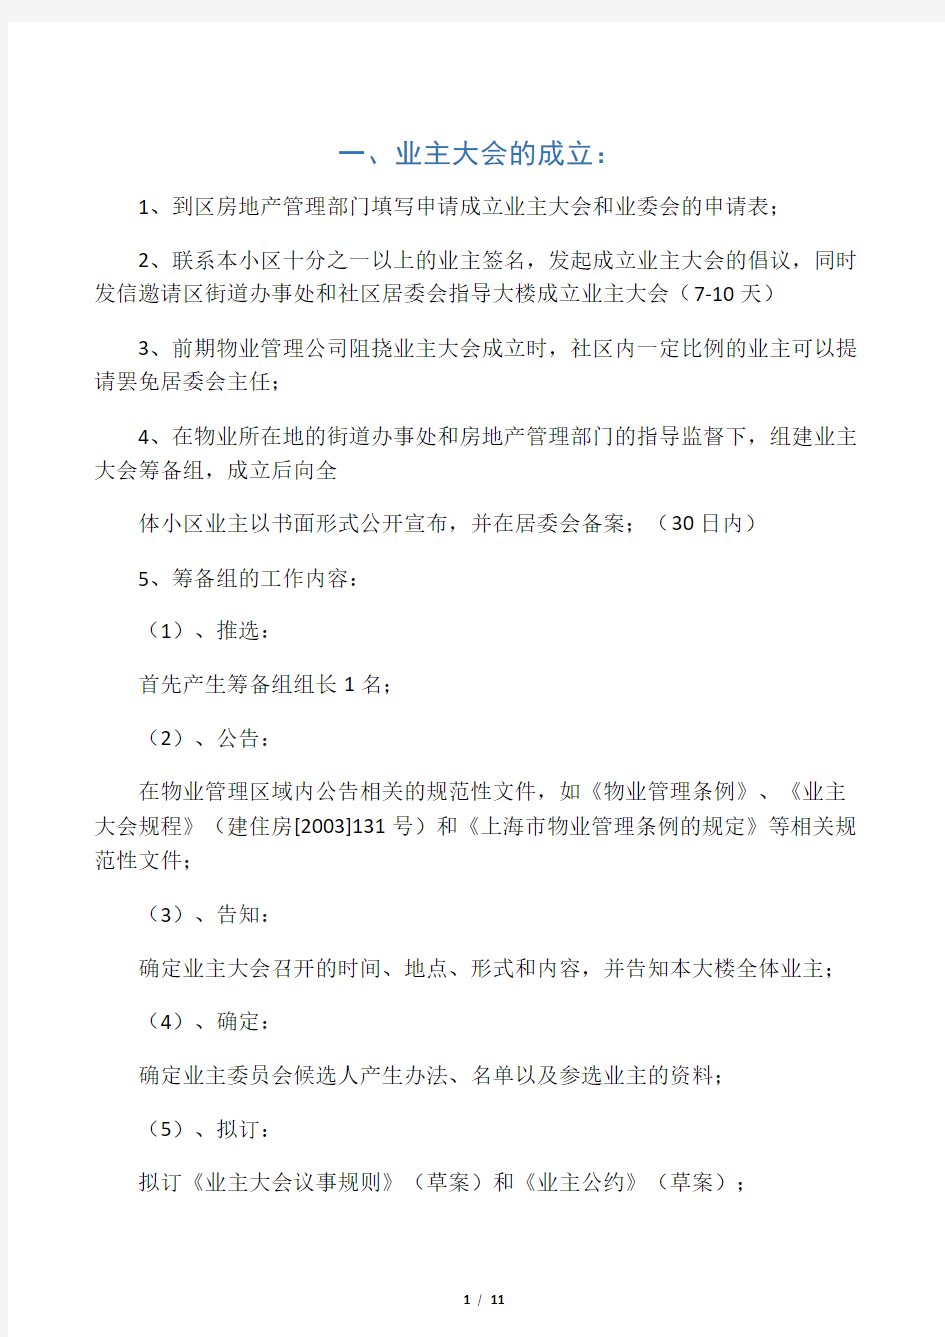 00 上海业主大会及业委会成立的基本流程